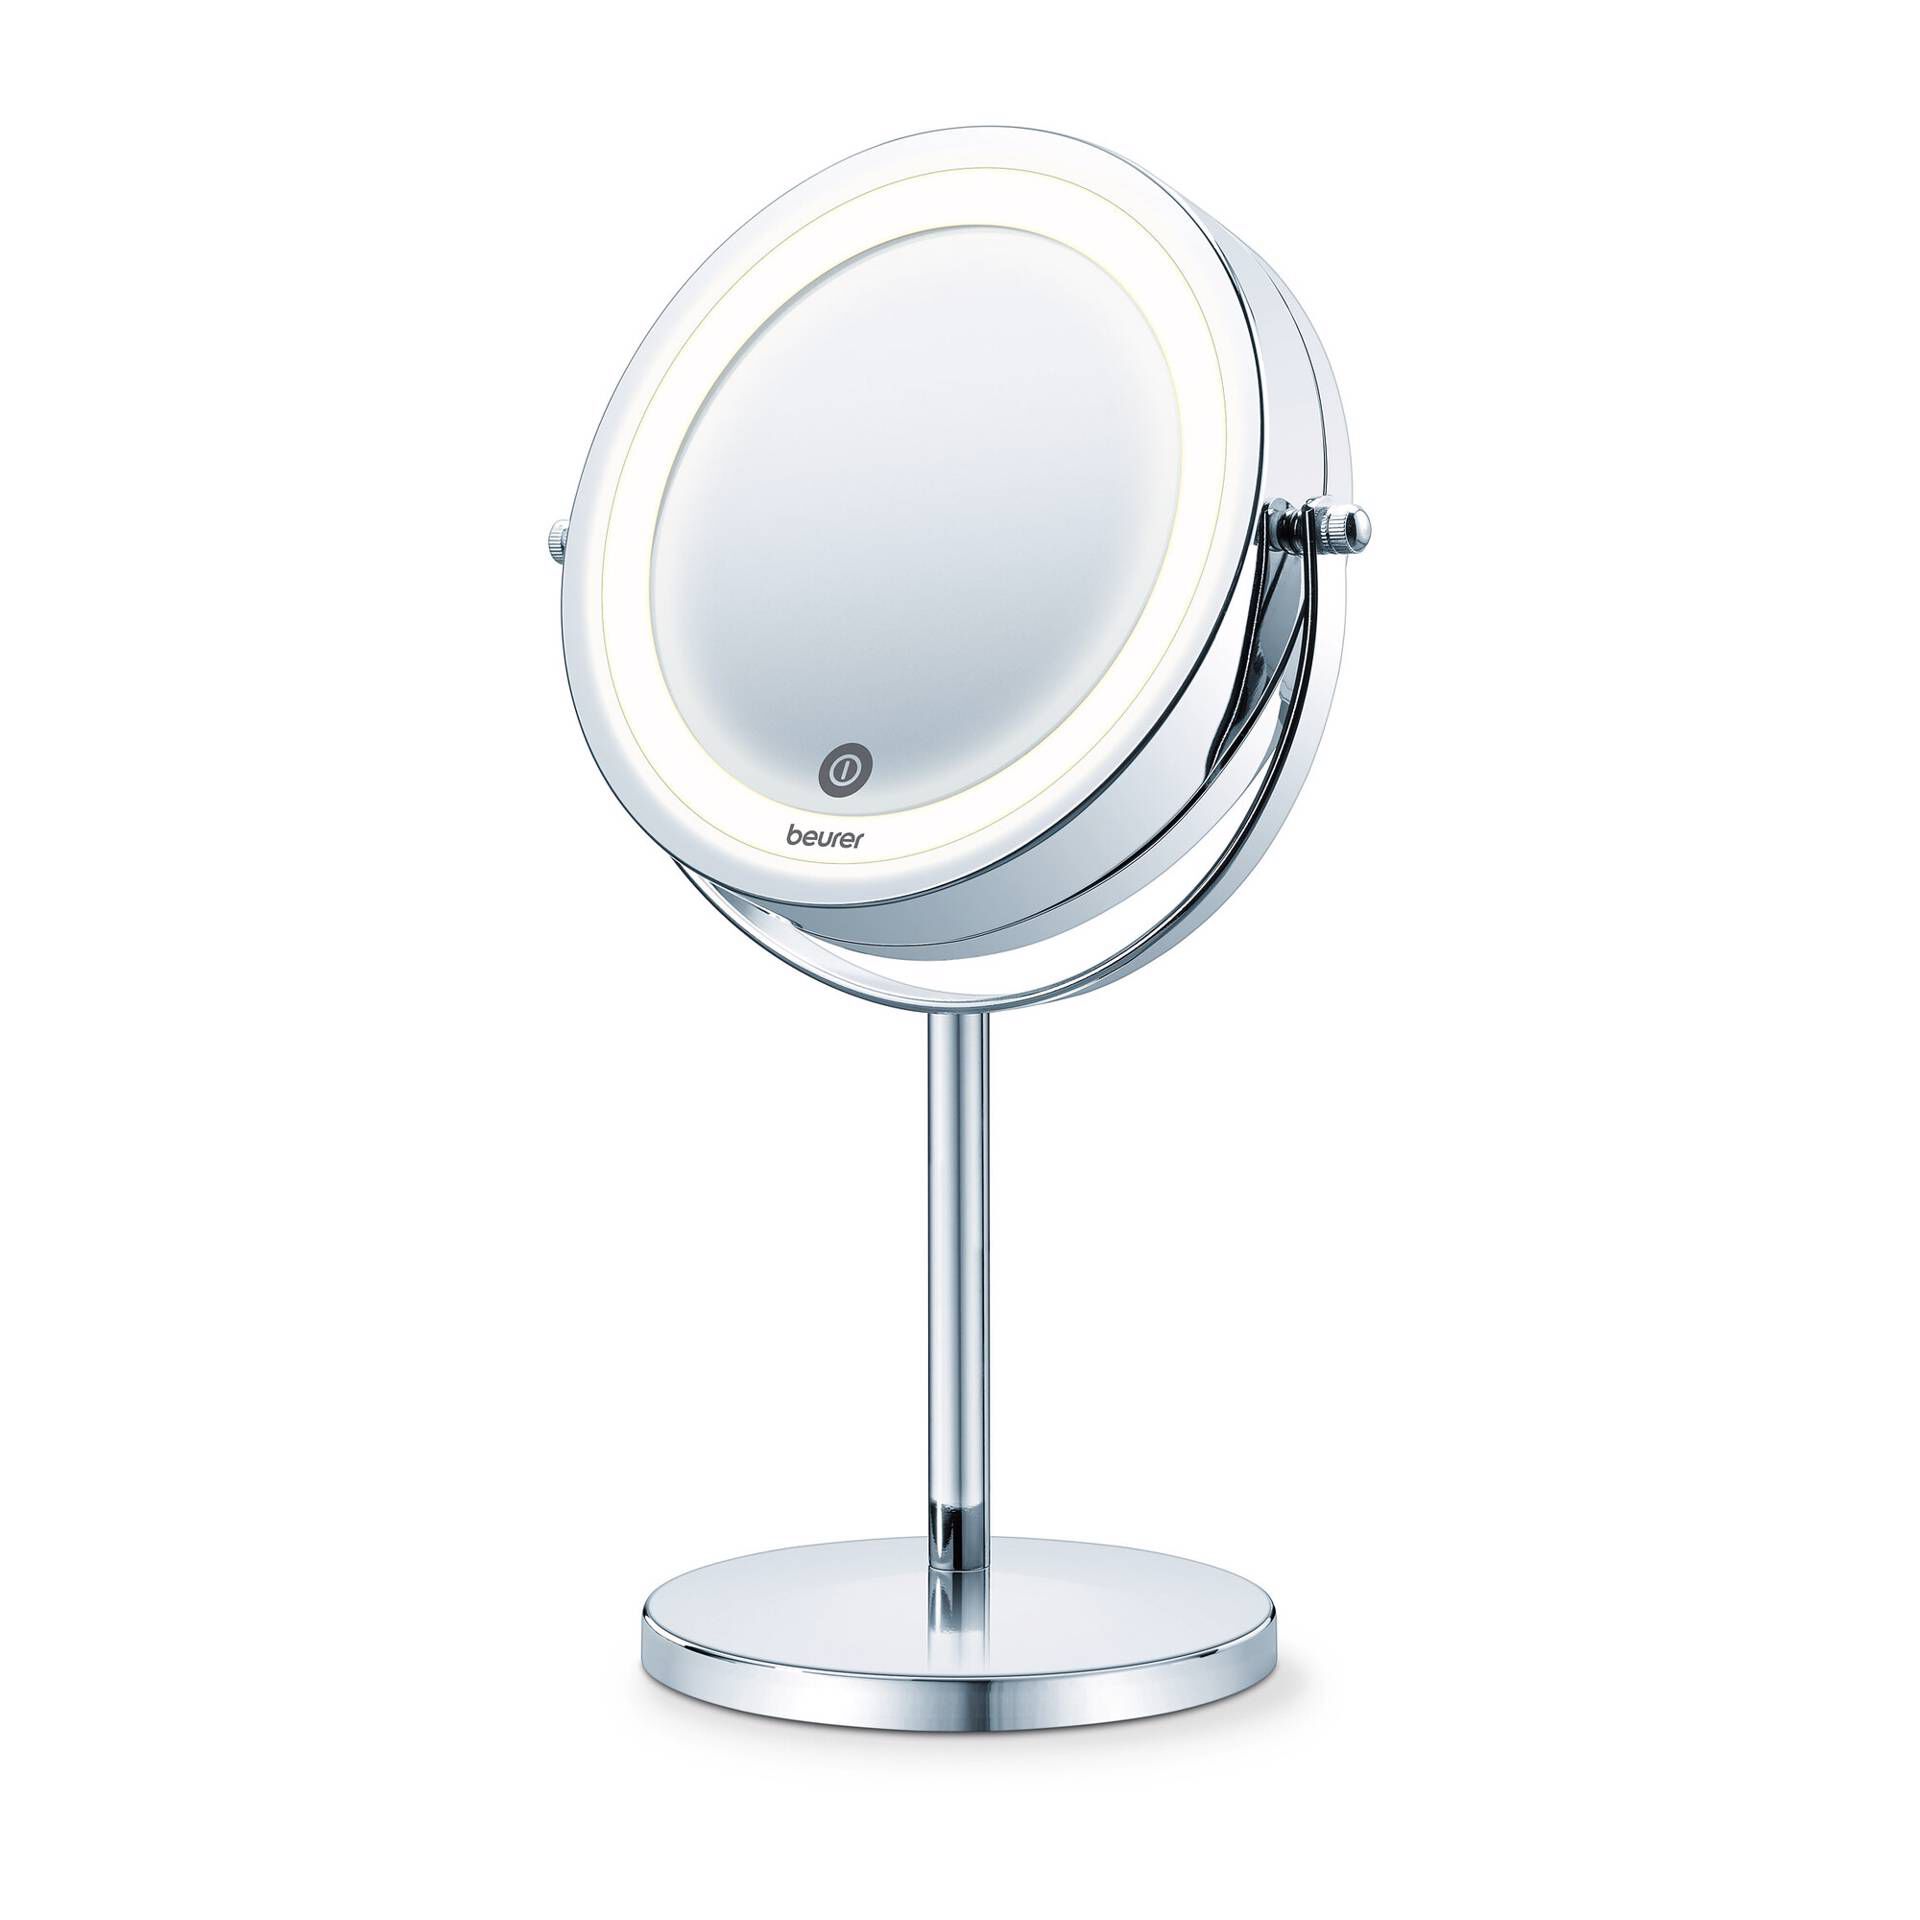 Espelho de Maquilhagem HOMCOM Preto Metal, Vidro e ABS  32.8x11x47.4cm_831-493V90